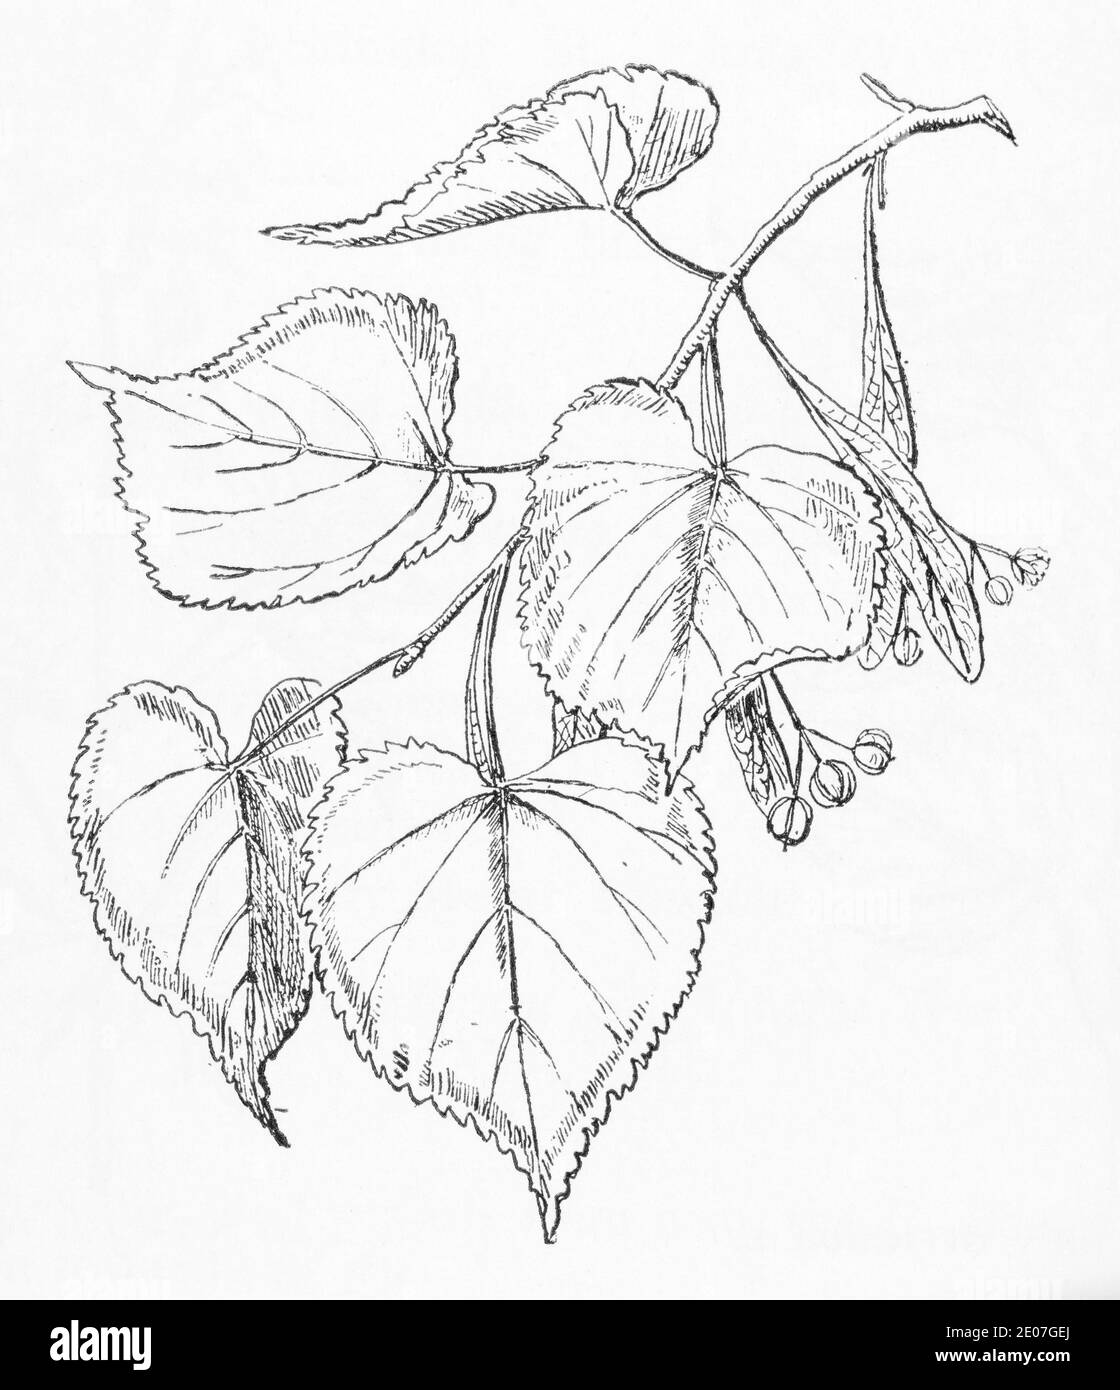 Ancienne gravure d'illustration botanique de lime à grand feuilles / Tilia platyphyllos. Plante médicinale traditionnelle. Voir Remarques Banque D'Images